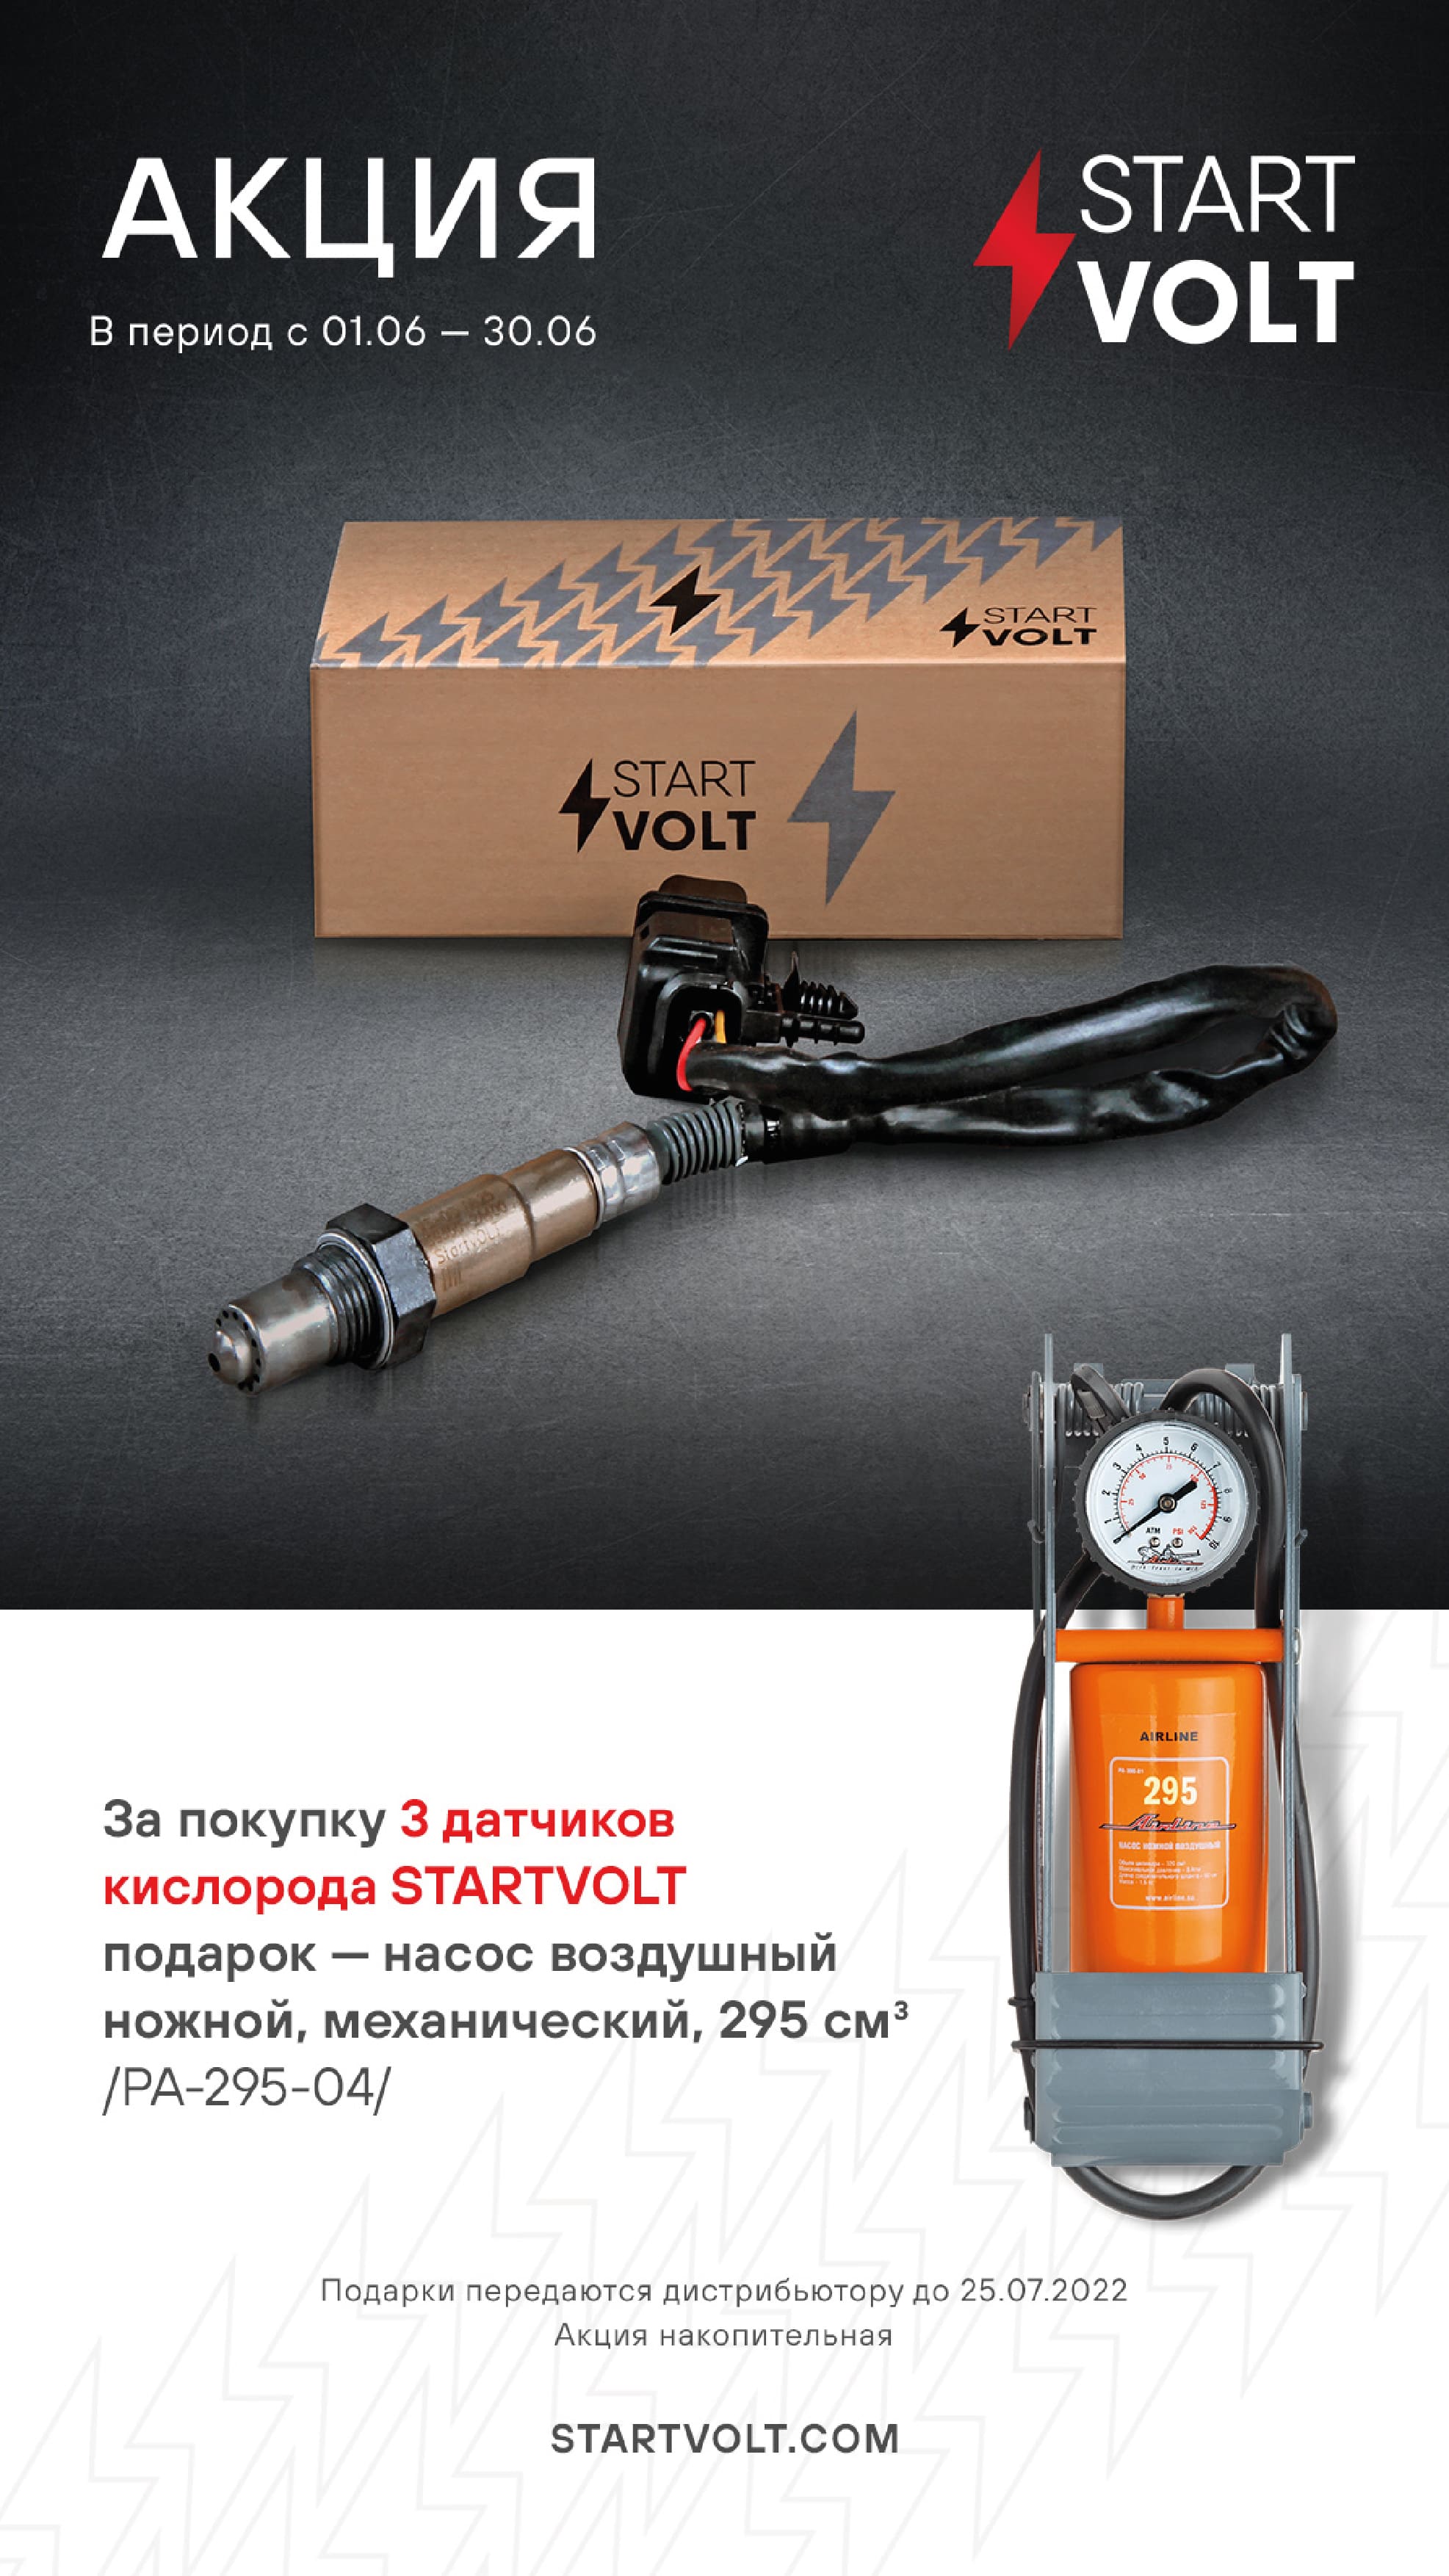 STARTVOLT - подарок за покупку датчиков кислорода.